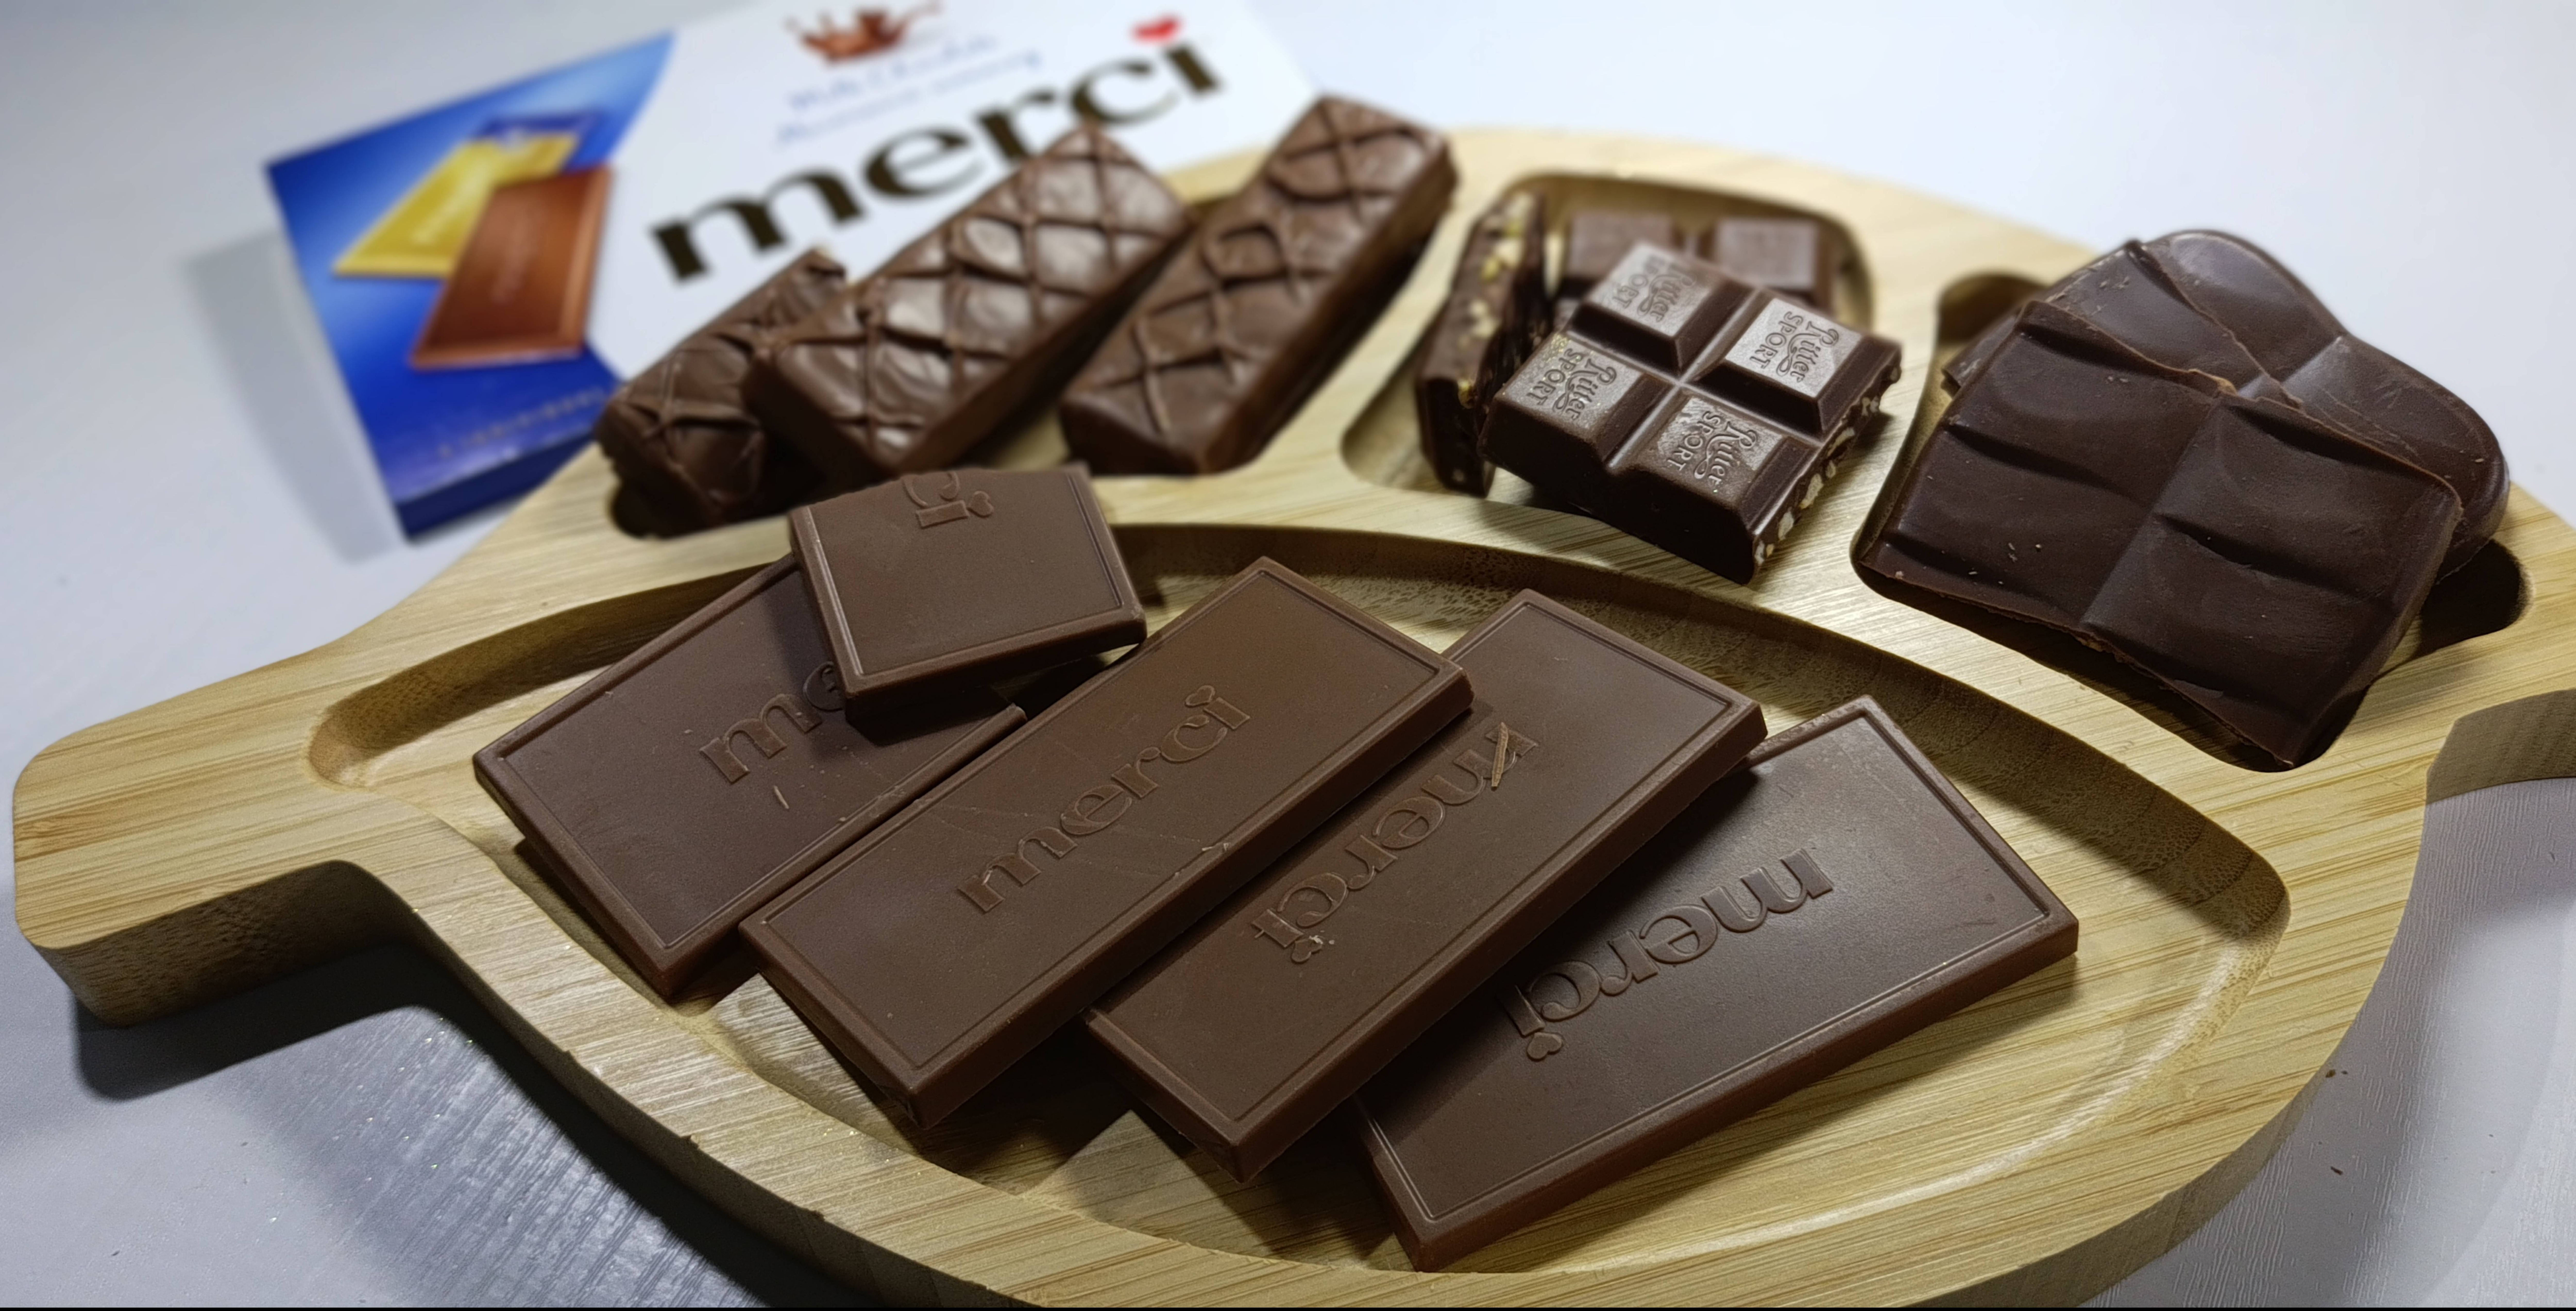 АСМР ШОКОЛАДНЫЙ🍩🍬 Хруст и постукивание шоколада для вашего удовлетворения и мурашек💖💝🍫